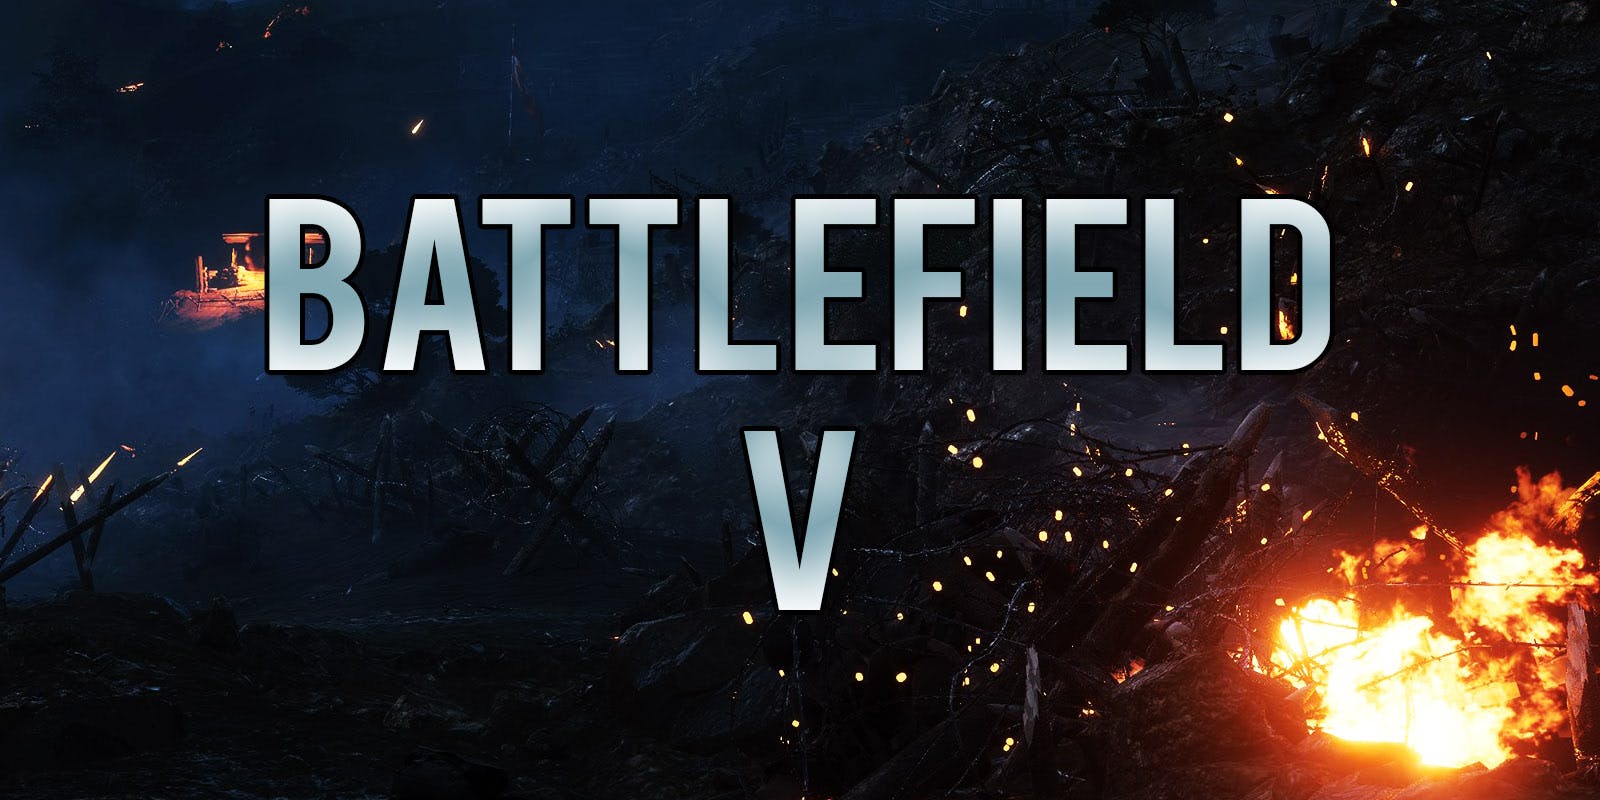 Pierwsze spojrzenie na Battlefield V już w środę! Oraz zapowiedź trailera.